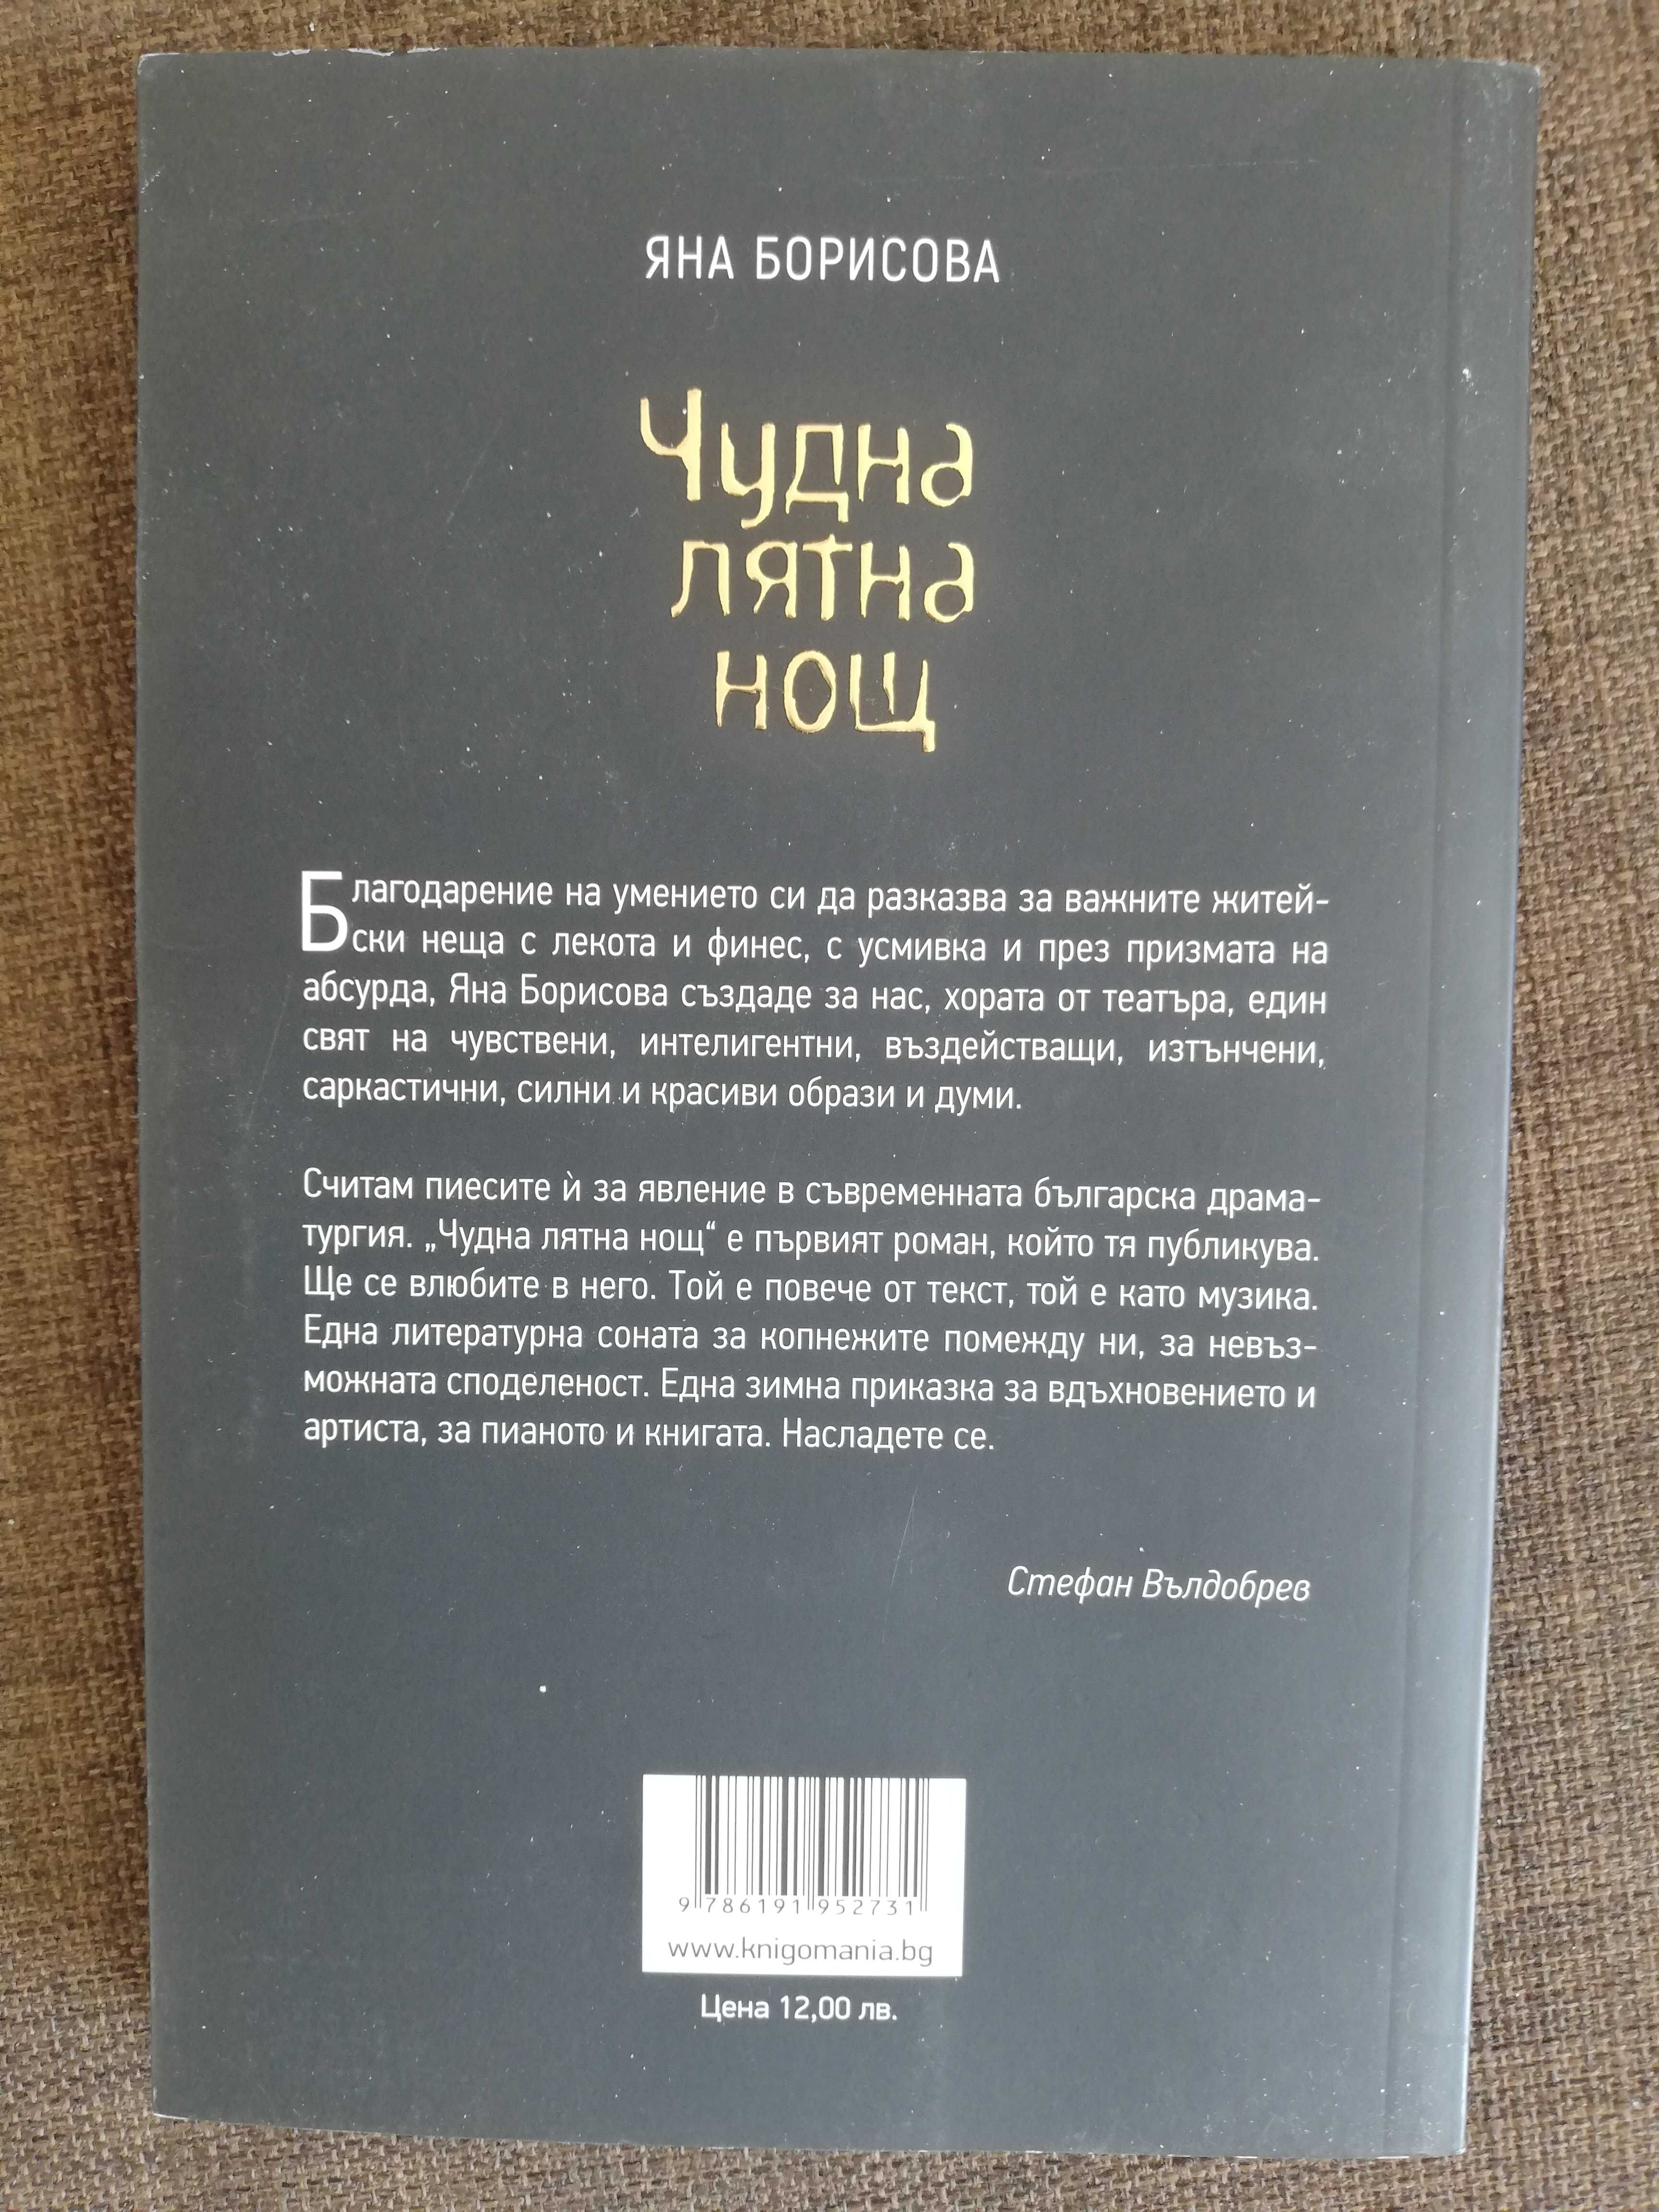 книга “Чудна лятна нощ” на Яна Борисова